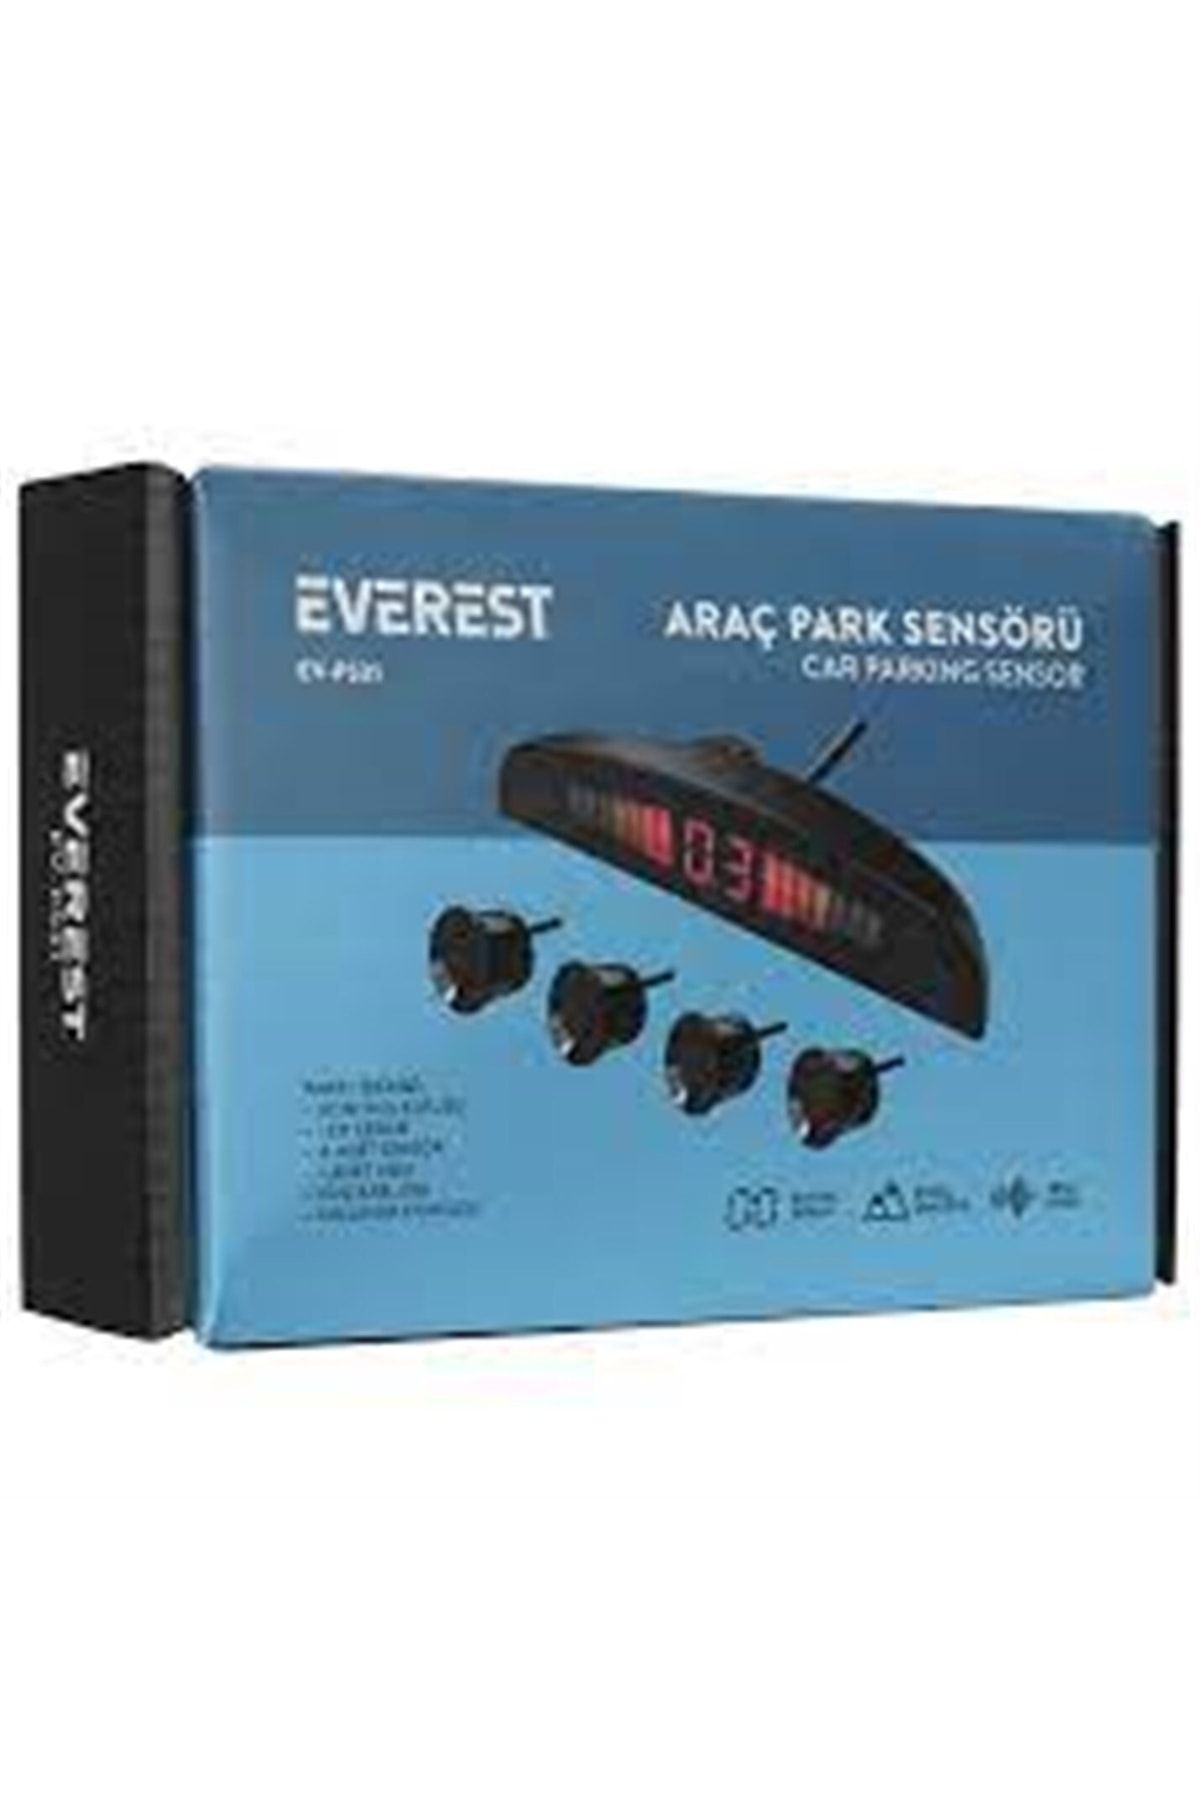 Everest Ev-ps31 Araç Park Sensörü